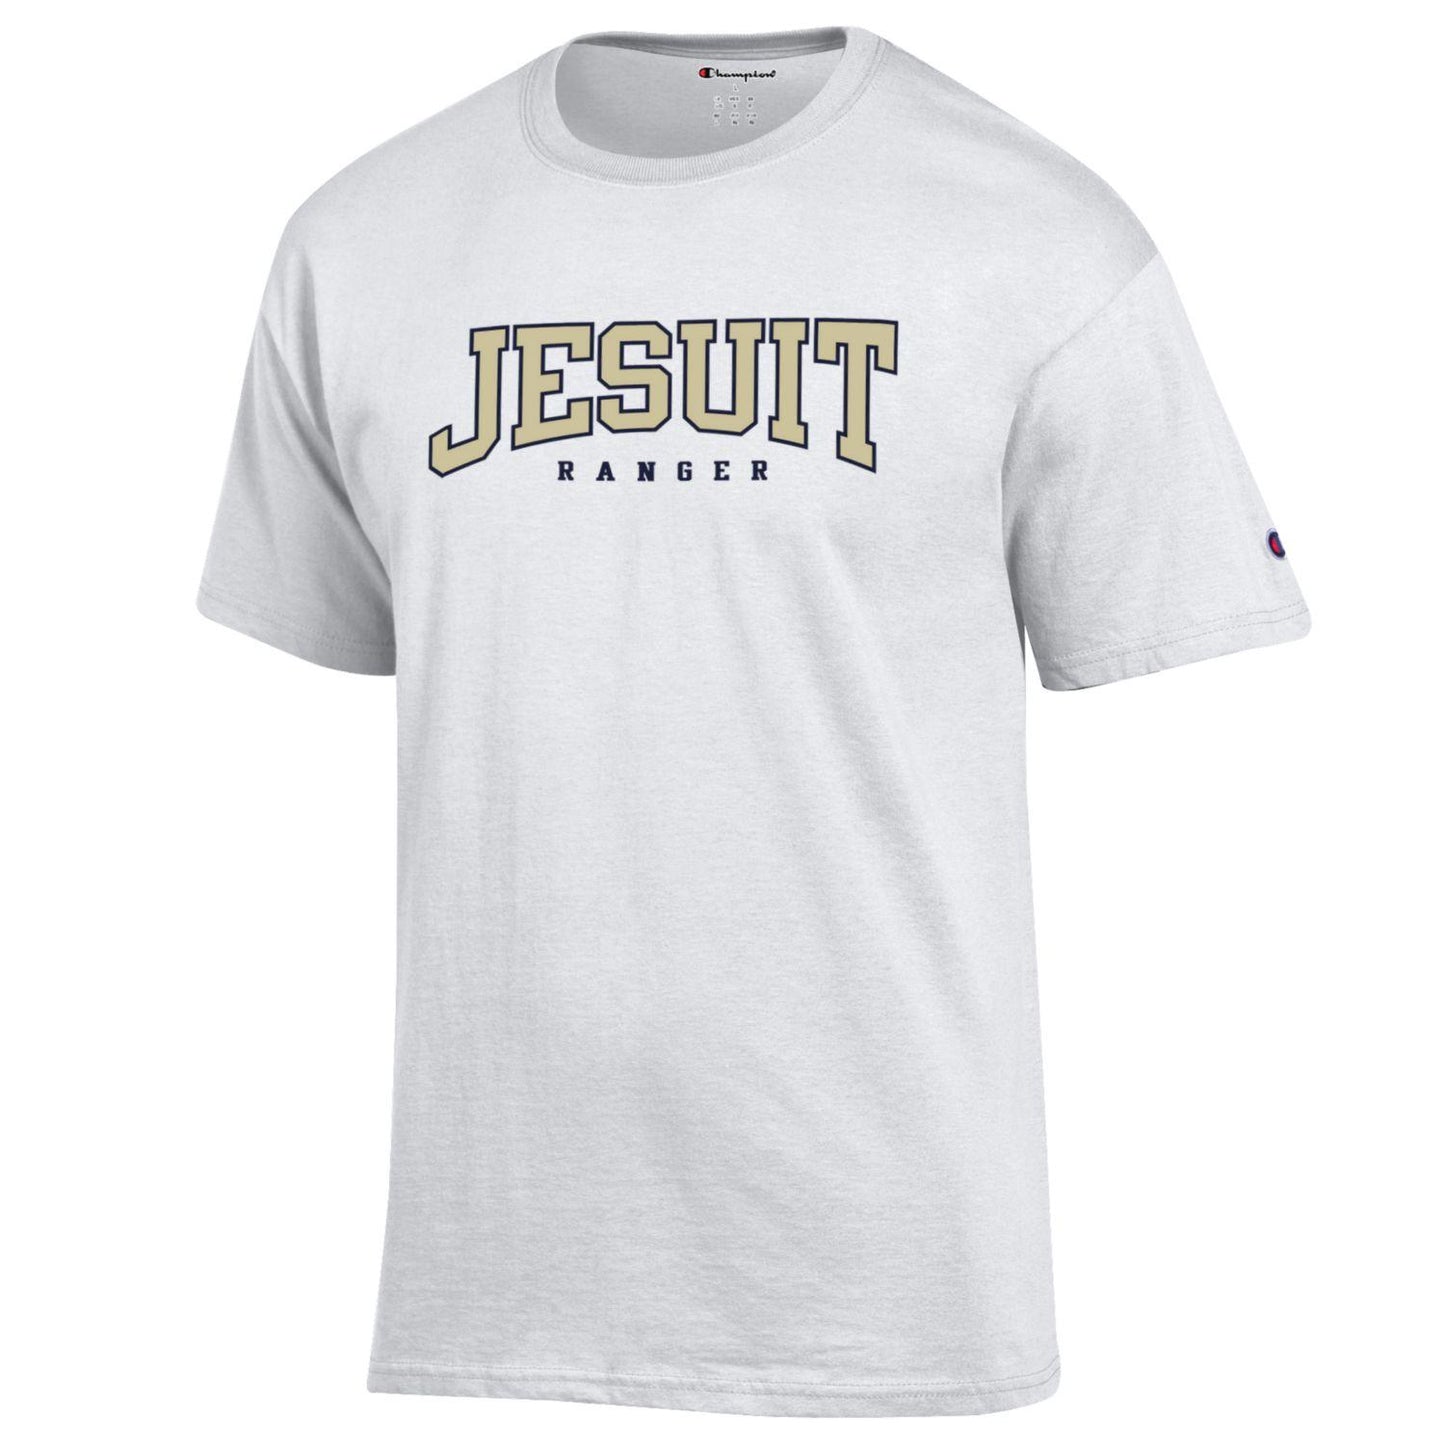 Jesuit Rangers Cotton Champion T-shirt